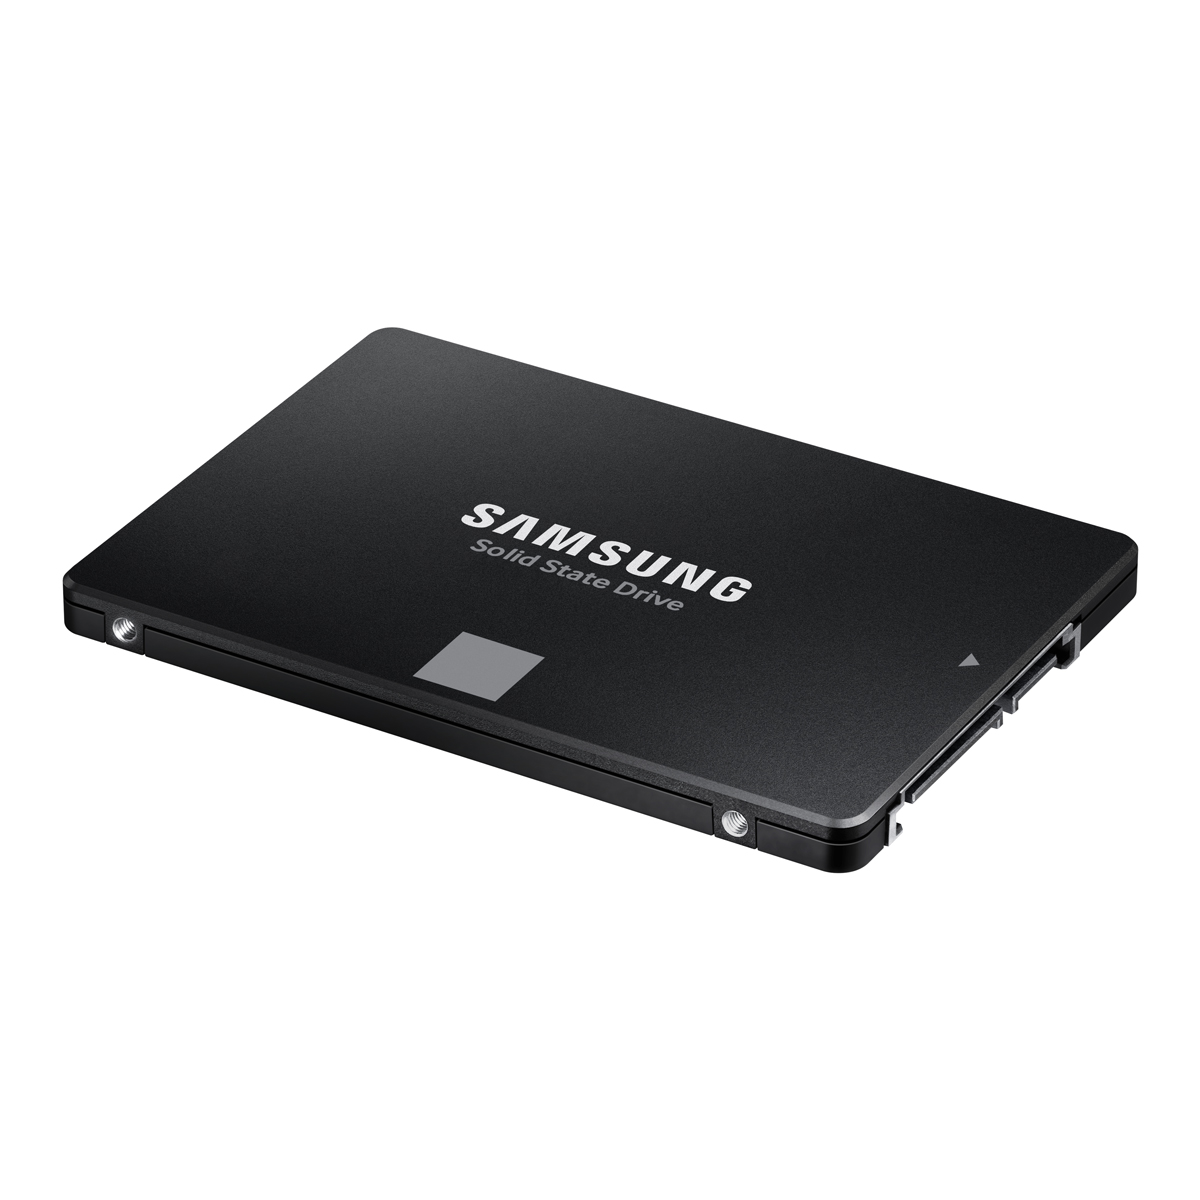 Samsung MZ-77E500B/IT SSD870EVOベーシックキット5